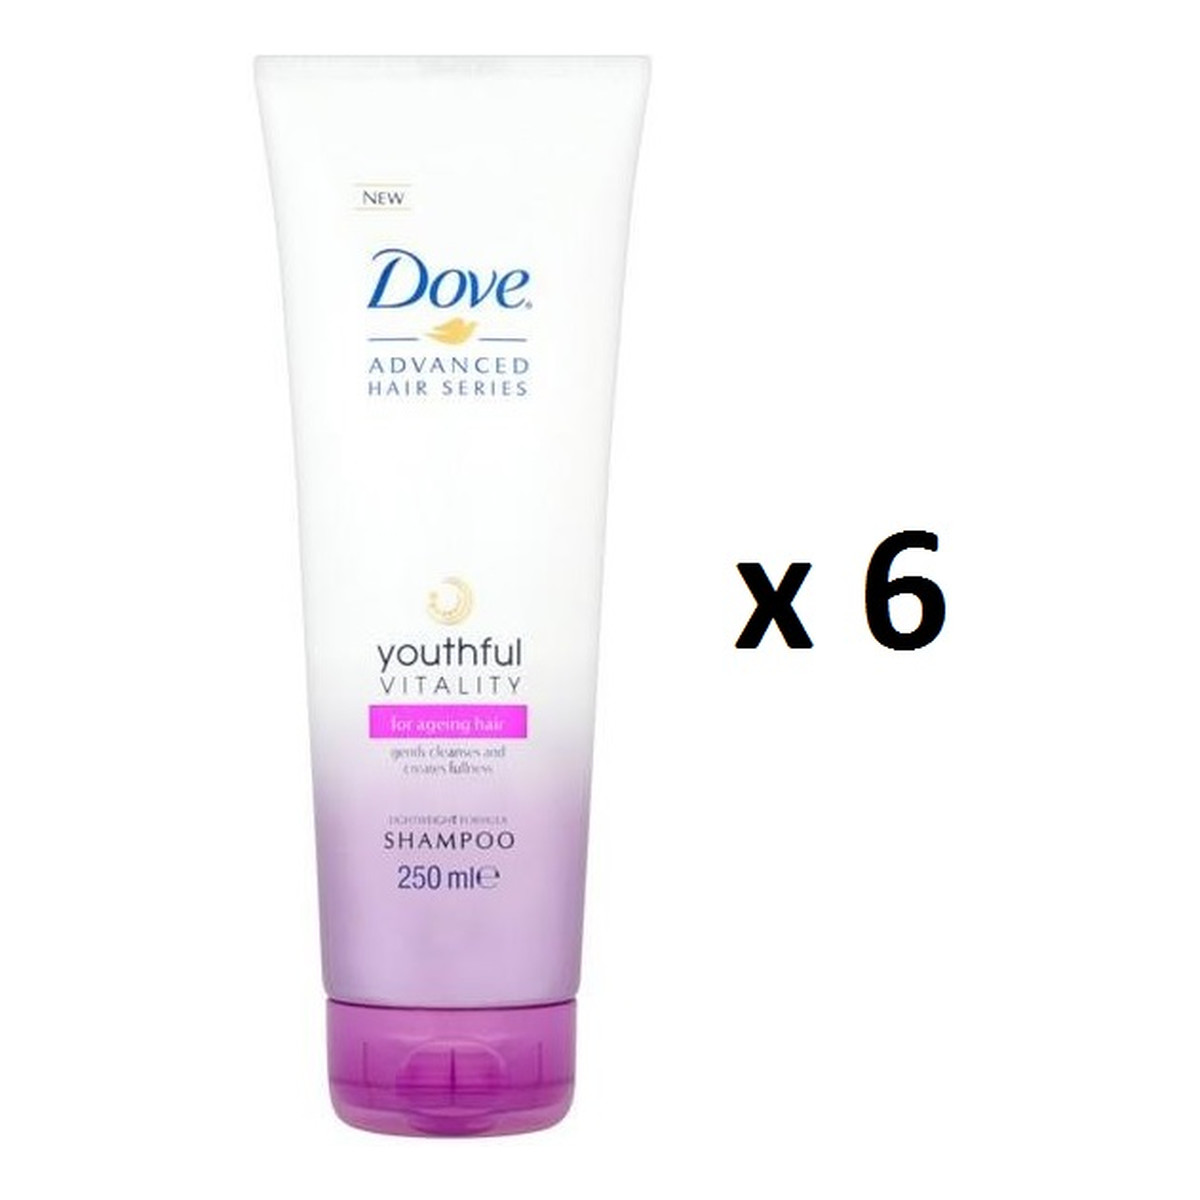 Dove Youthful Vitality Advanced Hair Series Shampoo szampon do włosów osłabionych bez połysku 6x250ml 1500ml